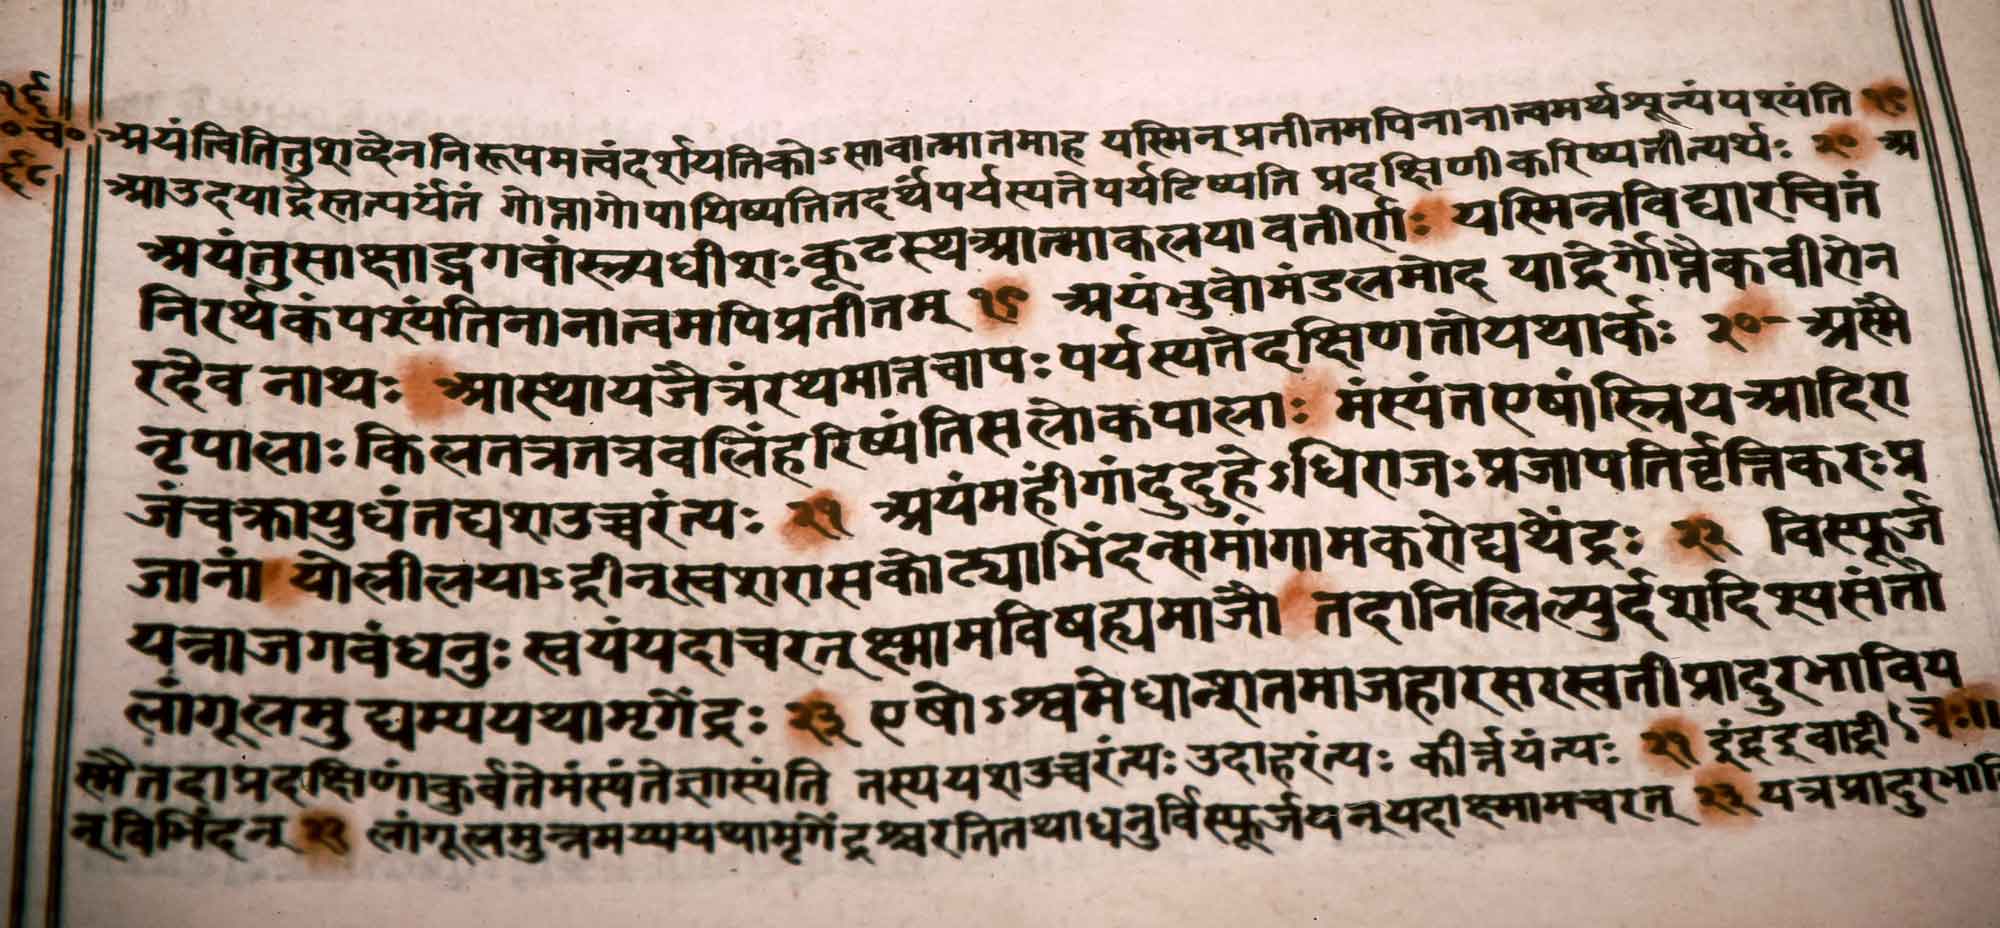 Bhakti-śāstroddhāriṇī Sabhā  (An Assembly to Preserve the Bhakti Śāstra)